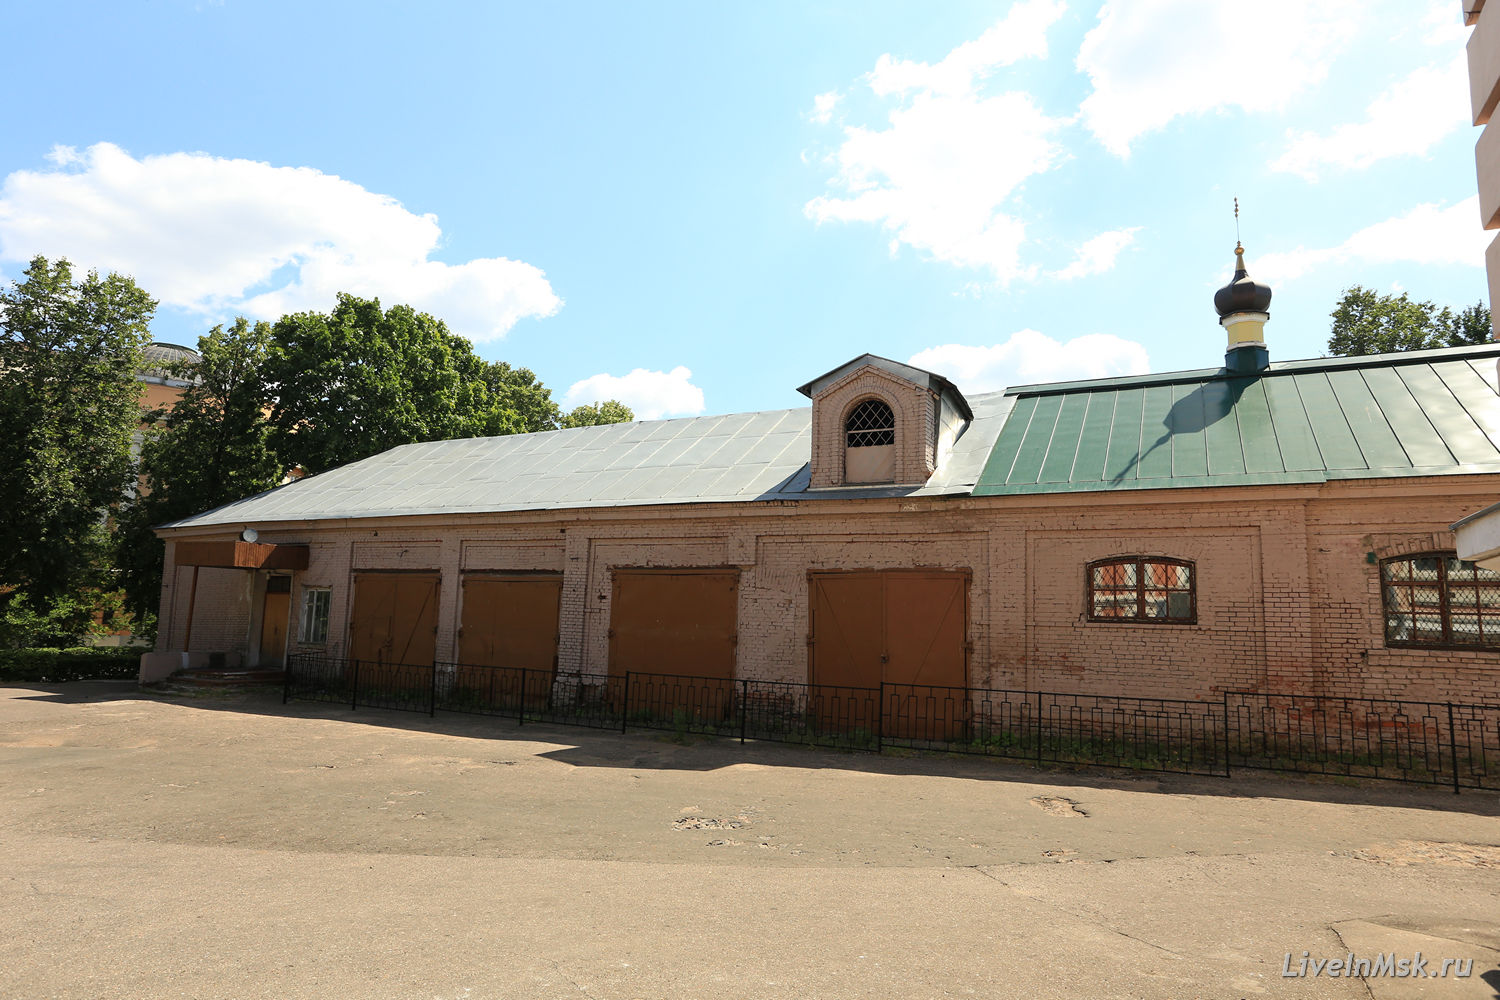 Тимирязевская академия. Домовая церковь